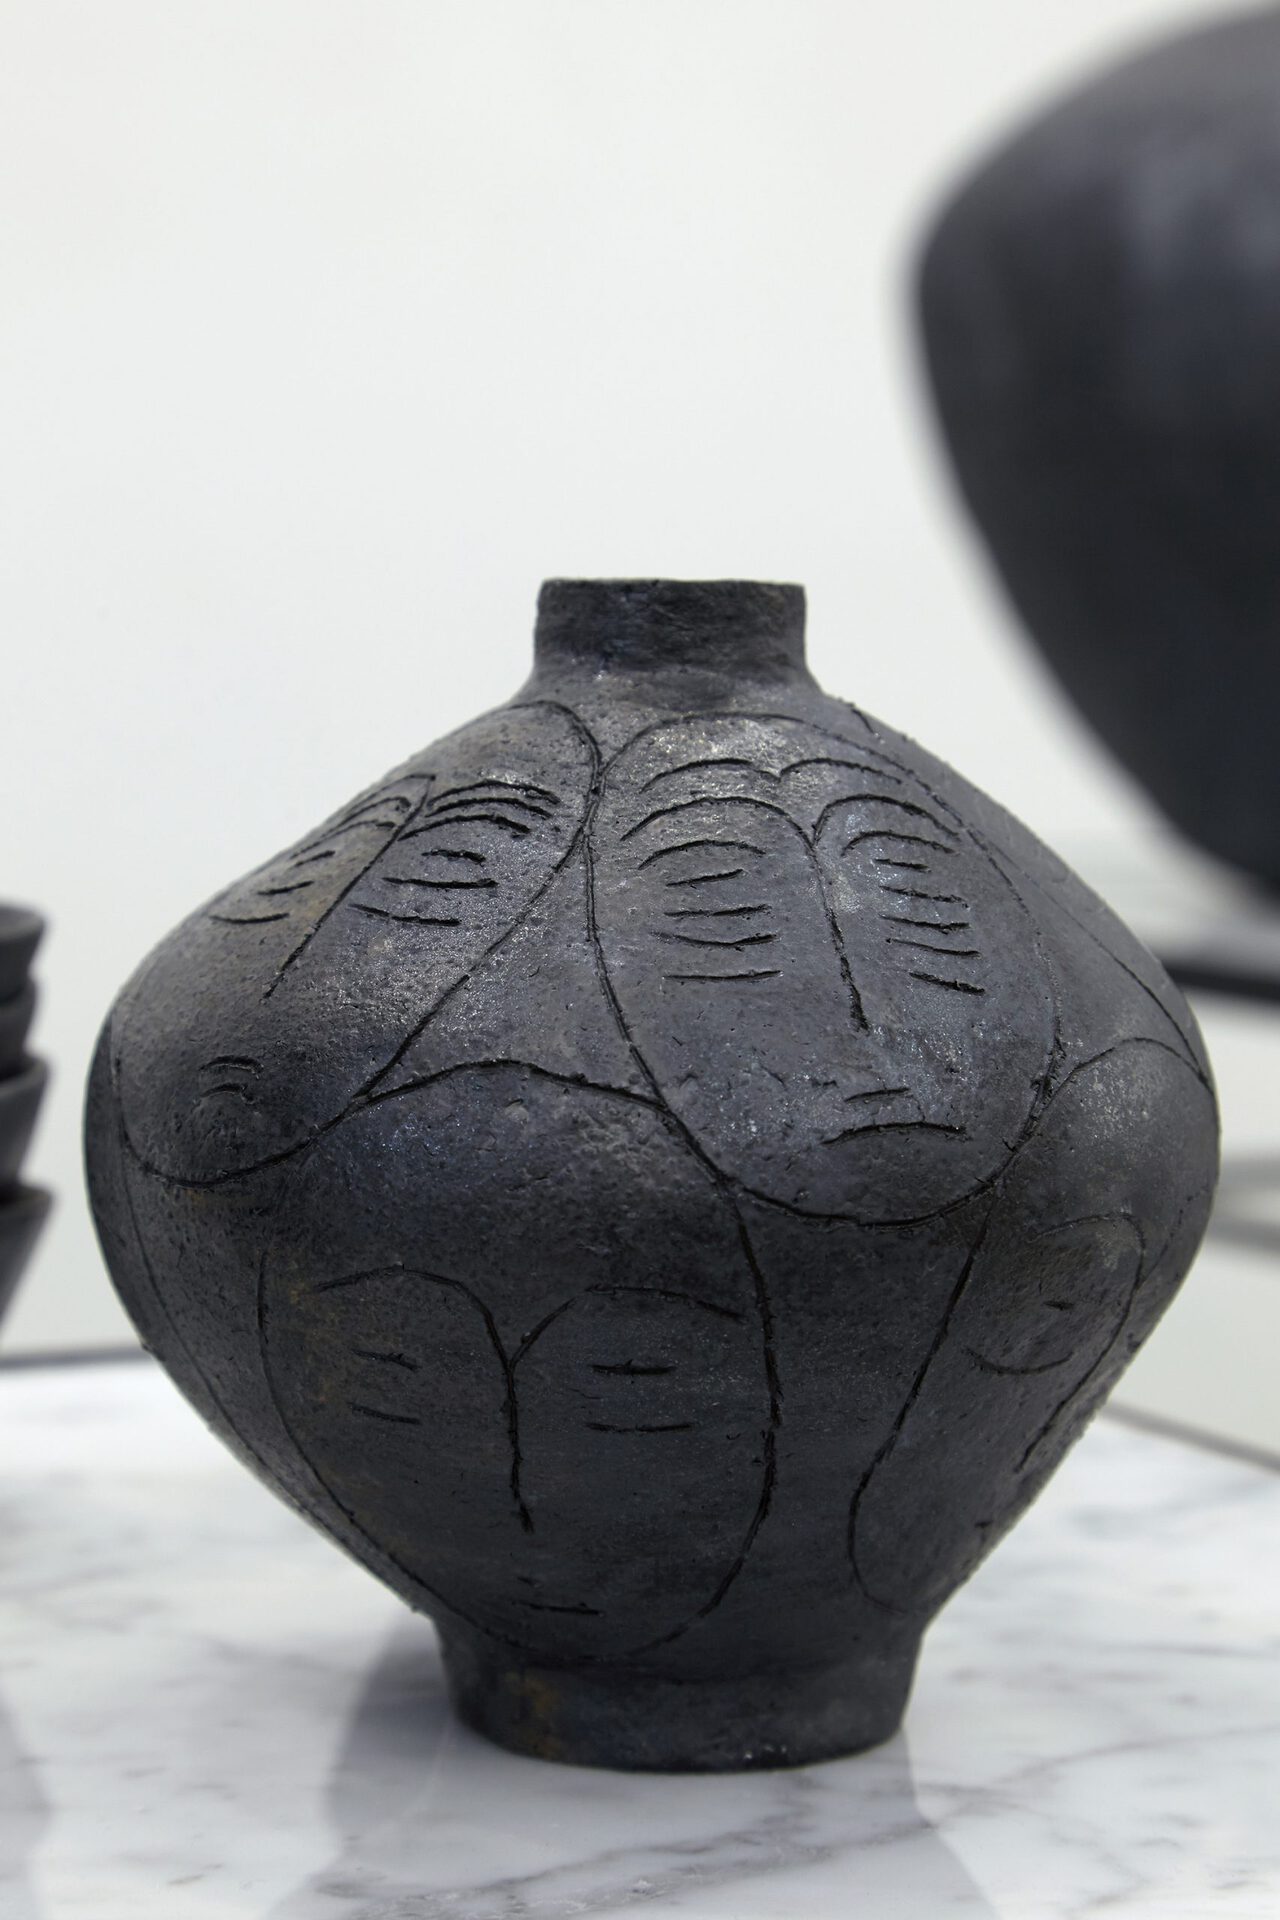 Sári Ember: Small black vase with heads, 2020, ceramics, 17x15x15 cm, Photo: Sári Ember, courtesy of Ani Molnár Gallery